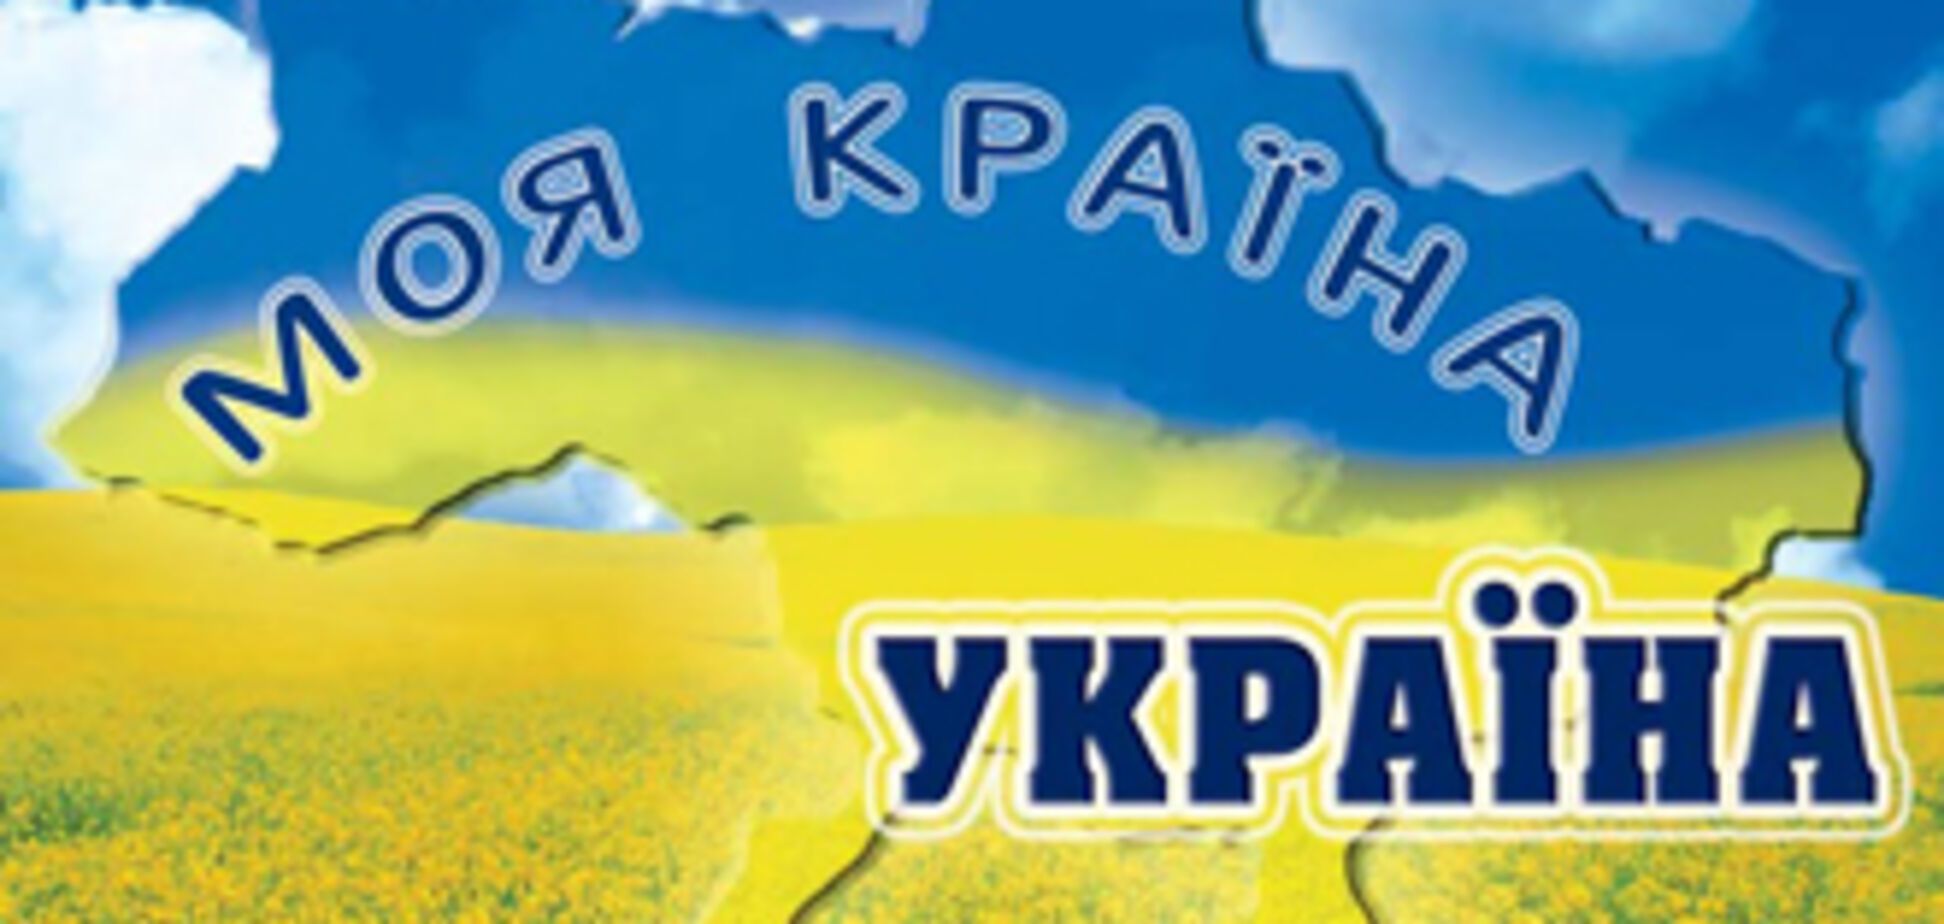 Регионал: Учите украинский язык!